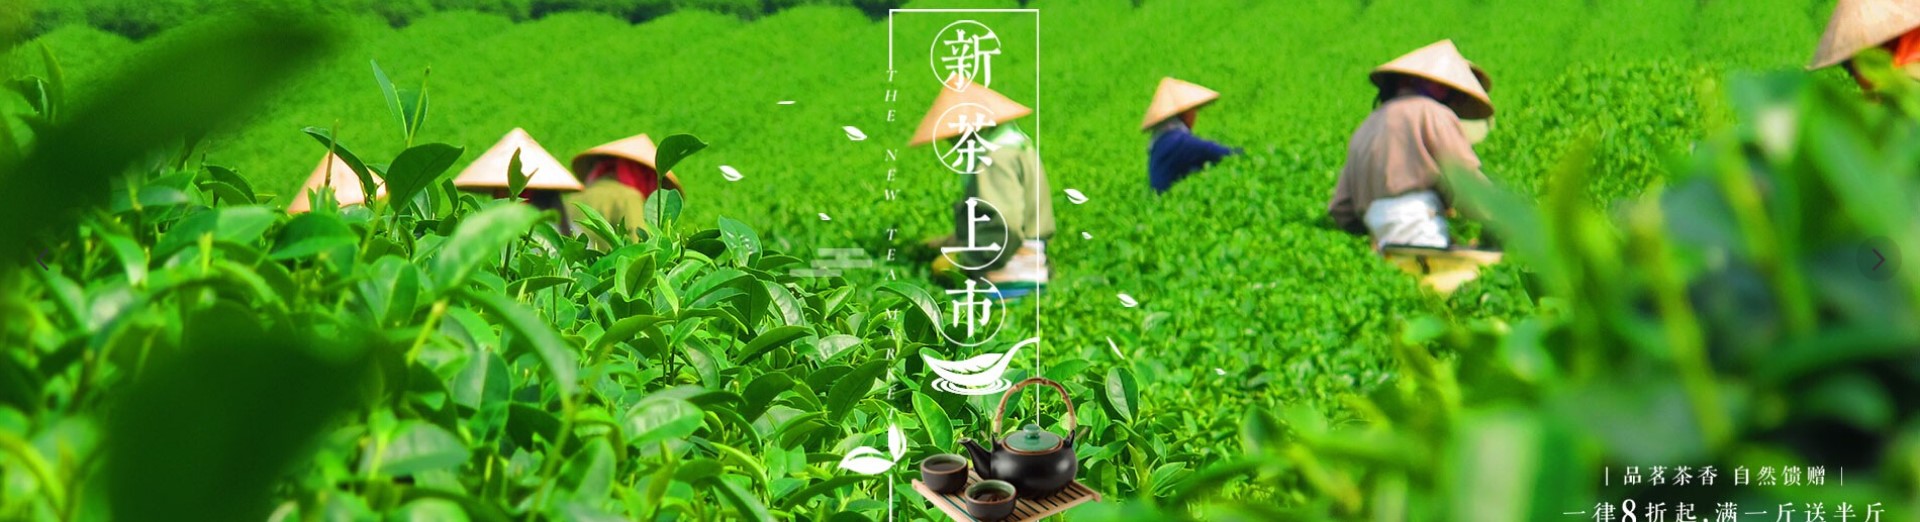 茶叶公司响应式网站建设案例